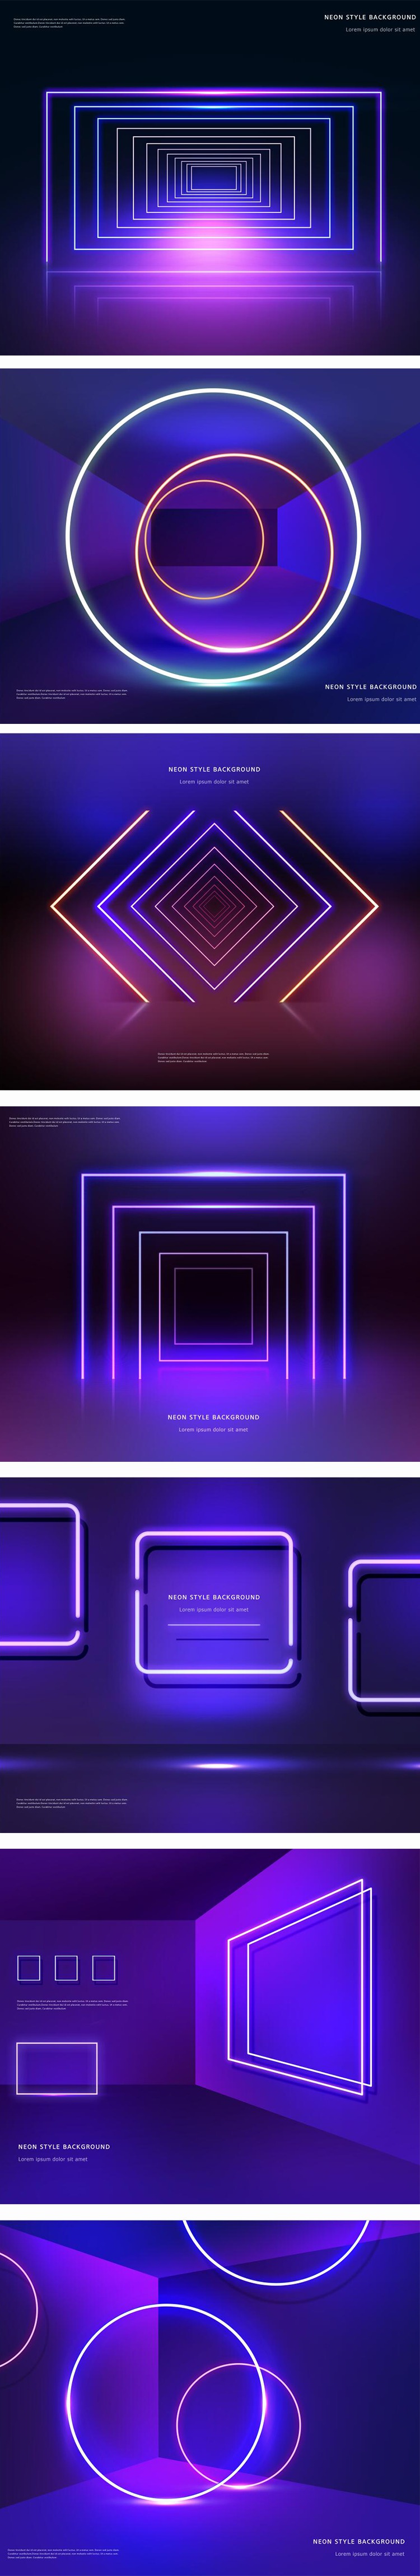 时尚蓝紫色背景板发光海报舞台灯光炫光效果PSD设计素材图 图片素材 第2张